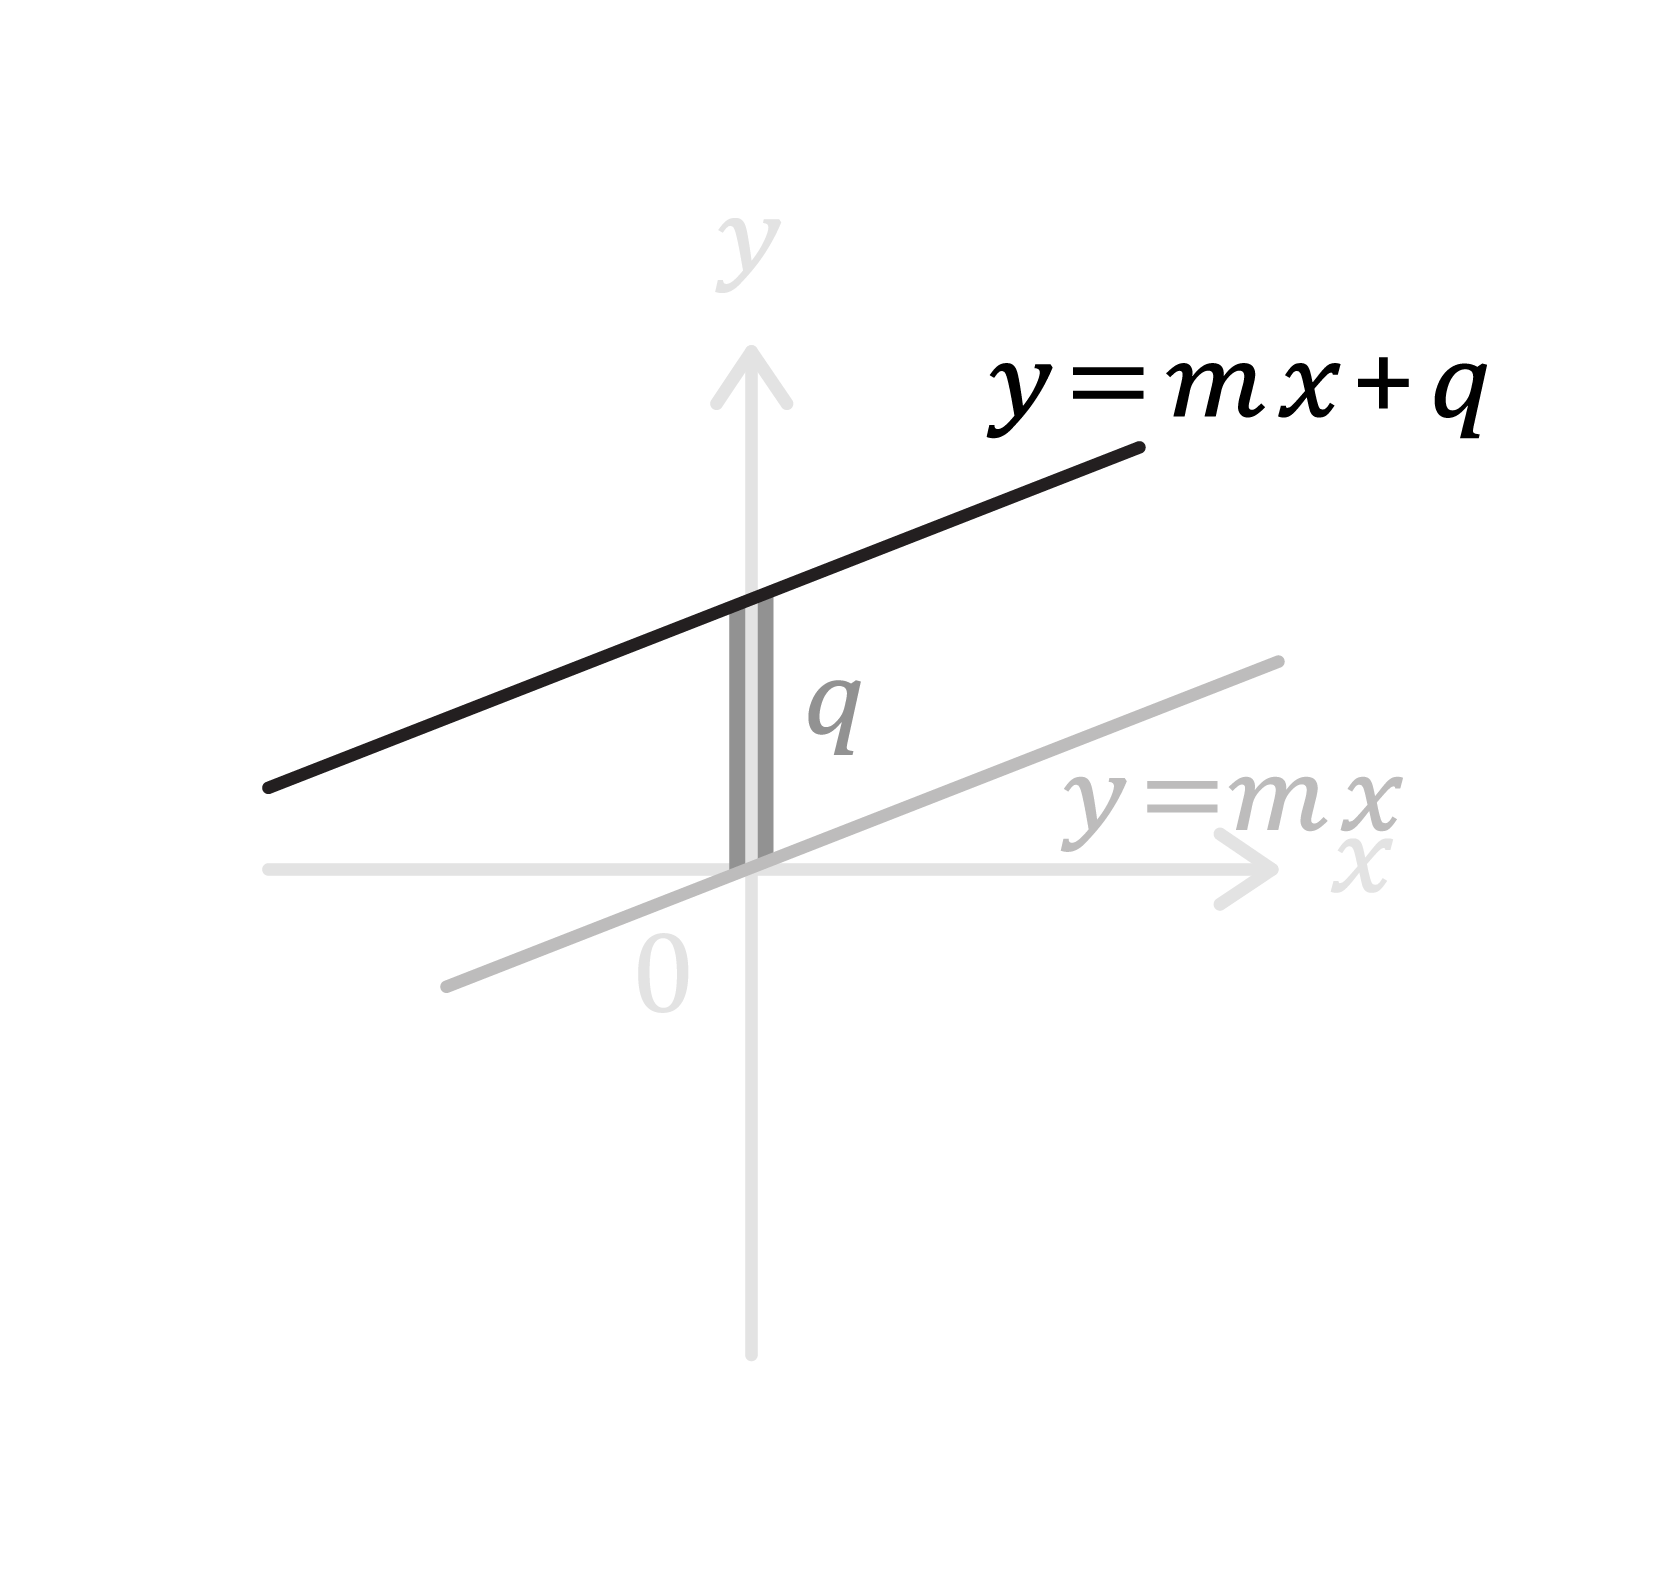 Matematica; Il piano Cartesiano; 2a superiore; Equazione della retta